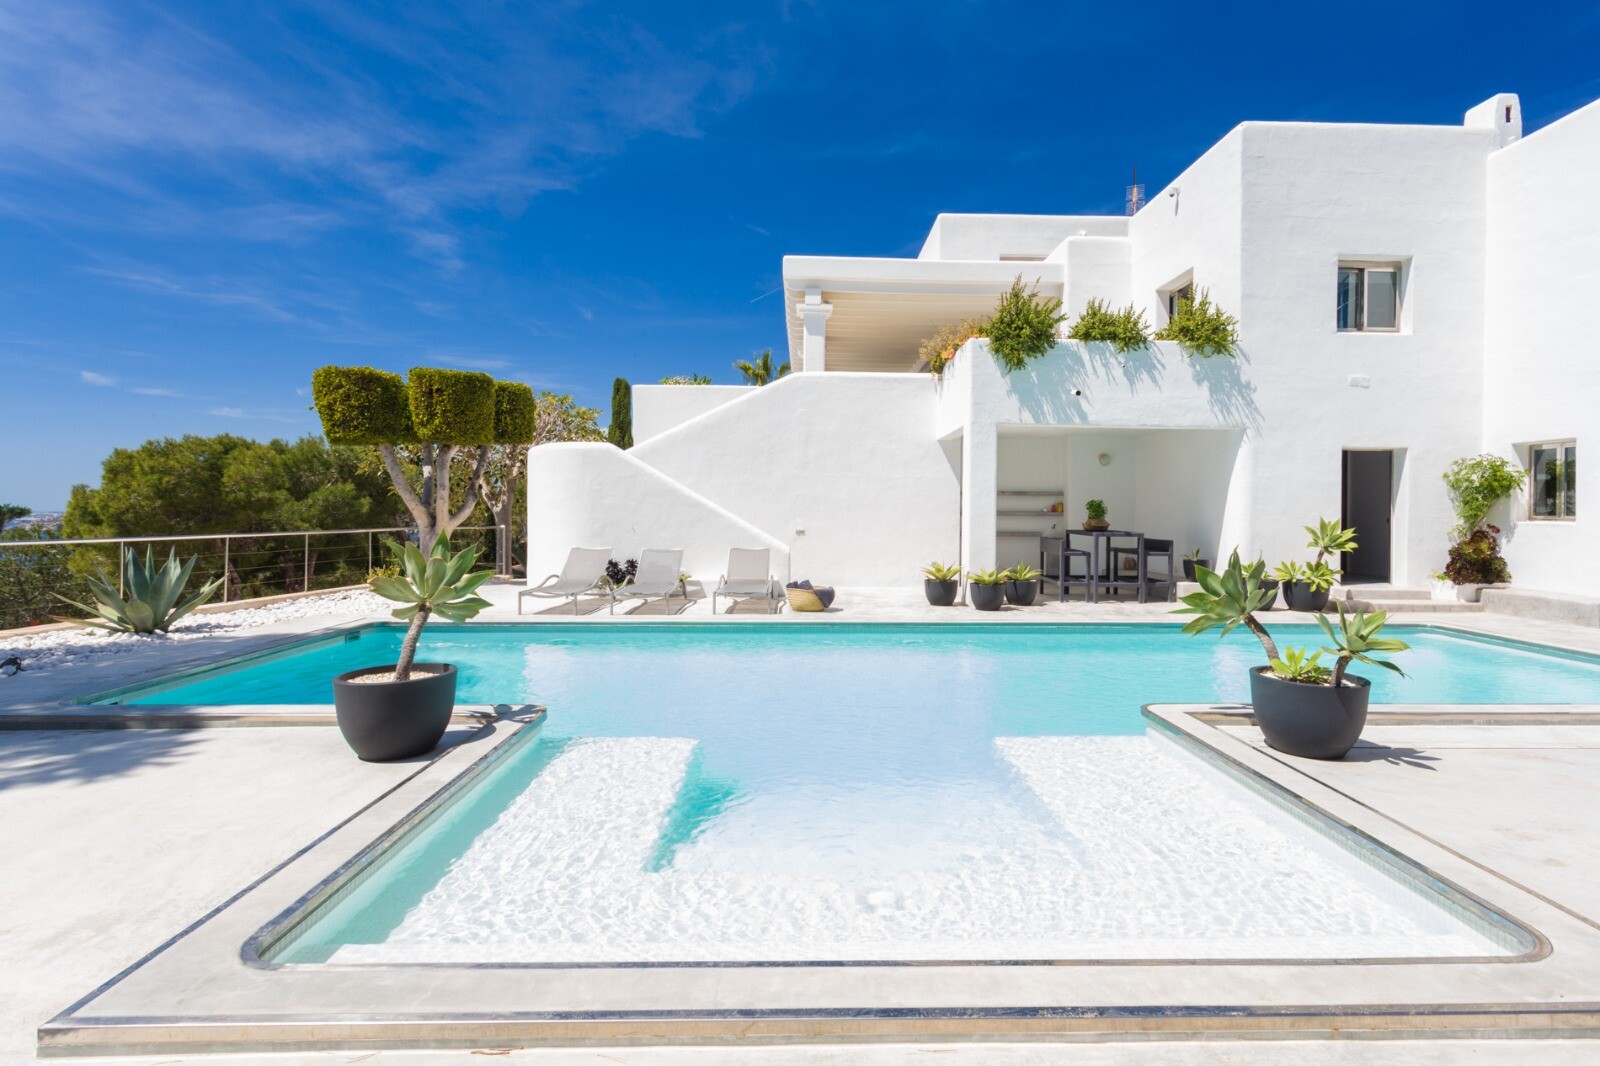 8 bedroom Villa in Spain, Ibiza, CASALIO